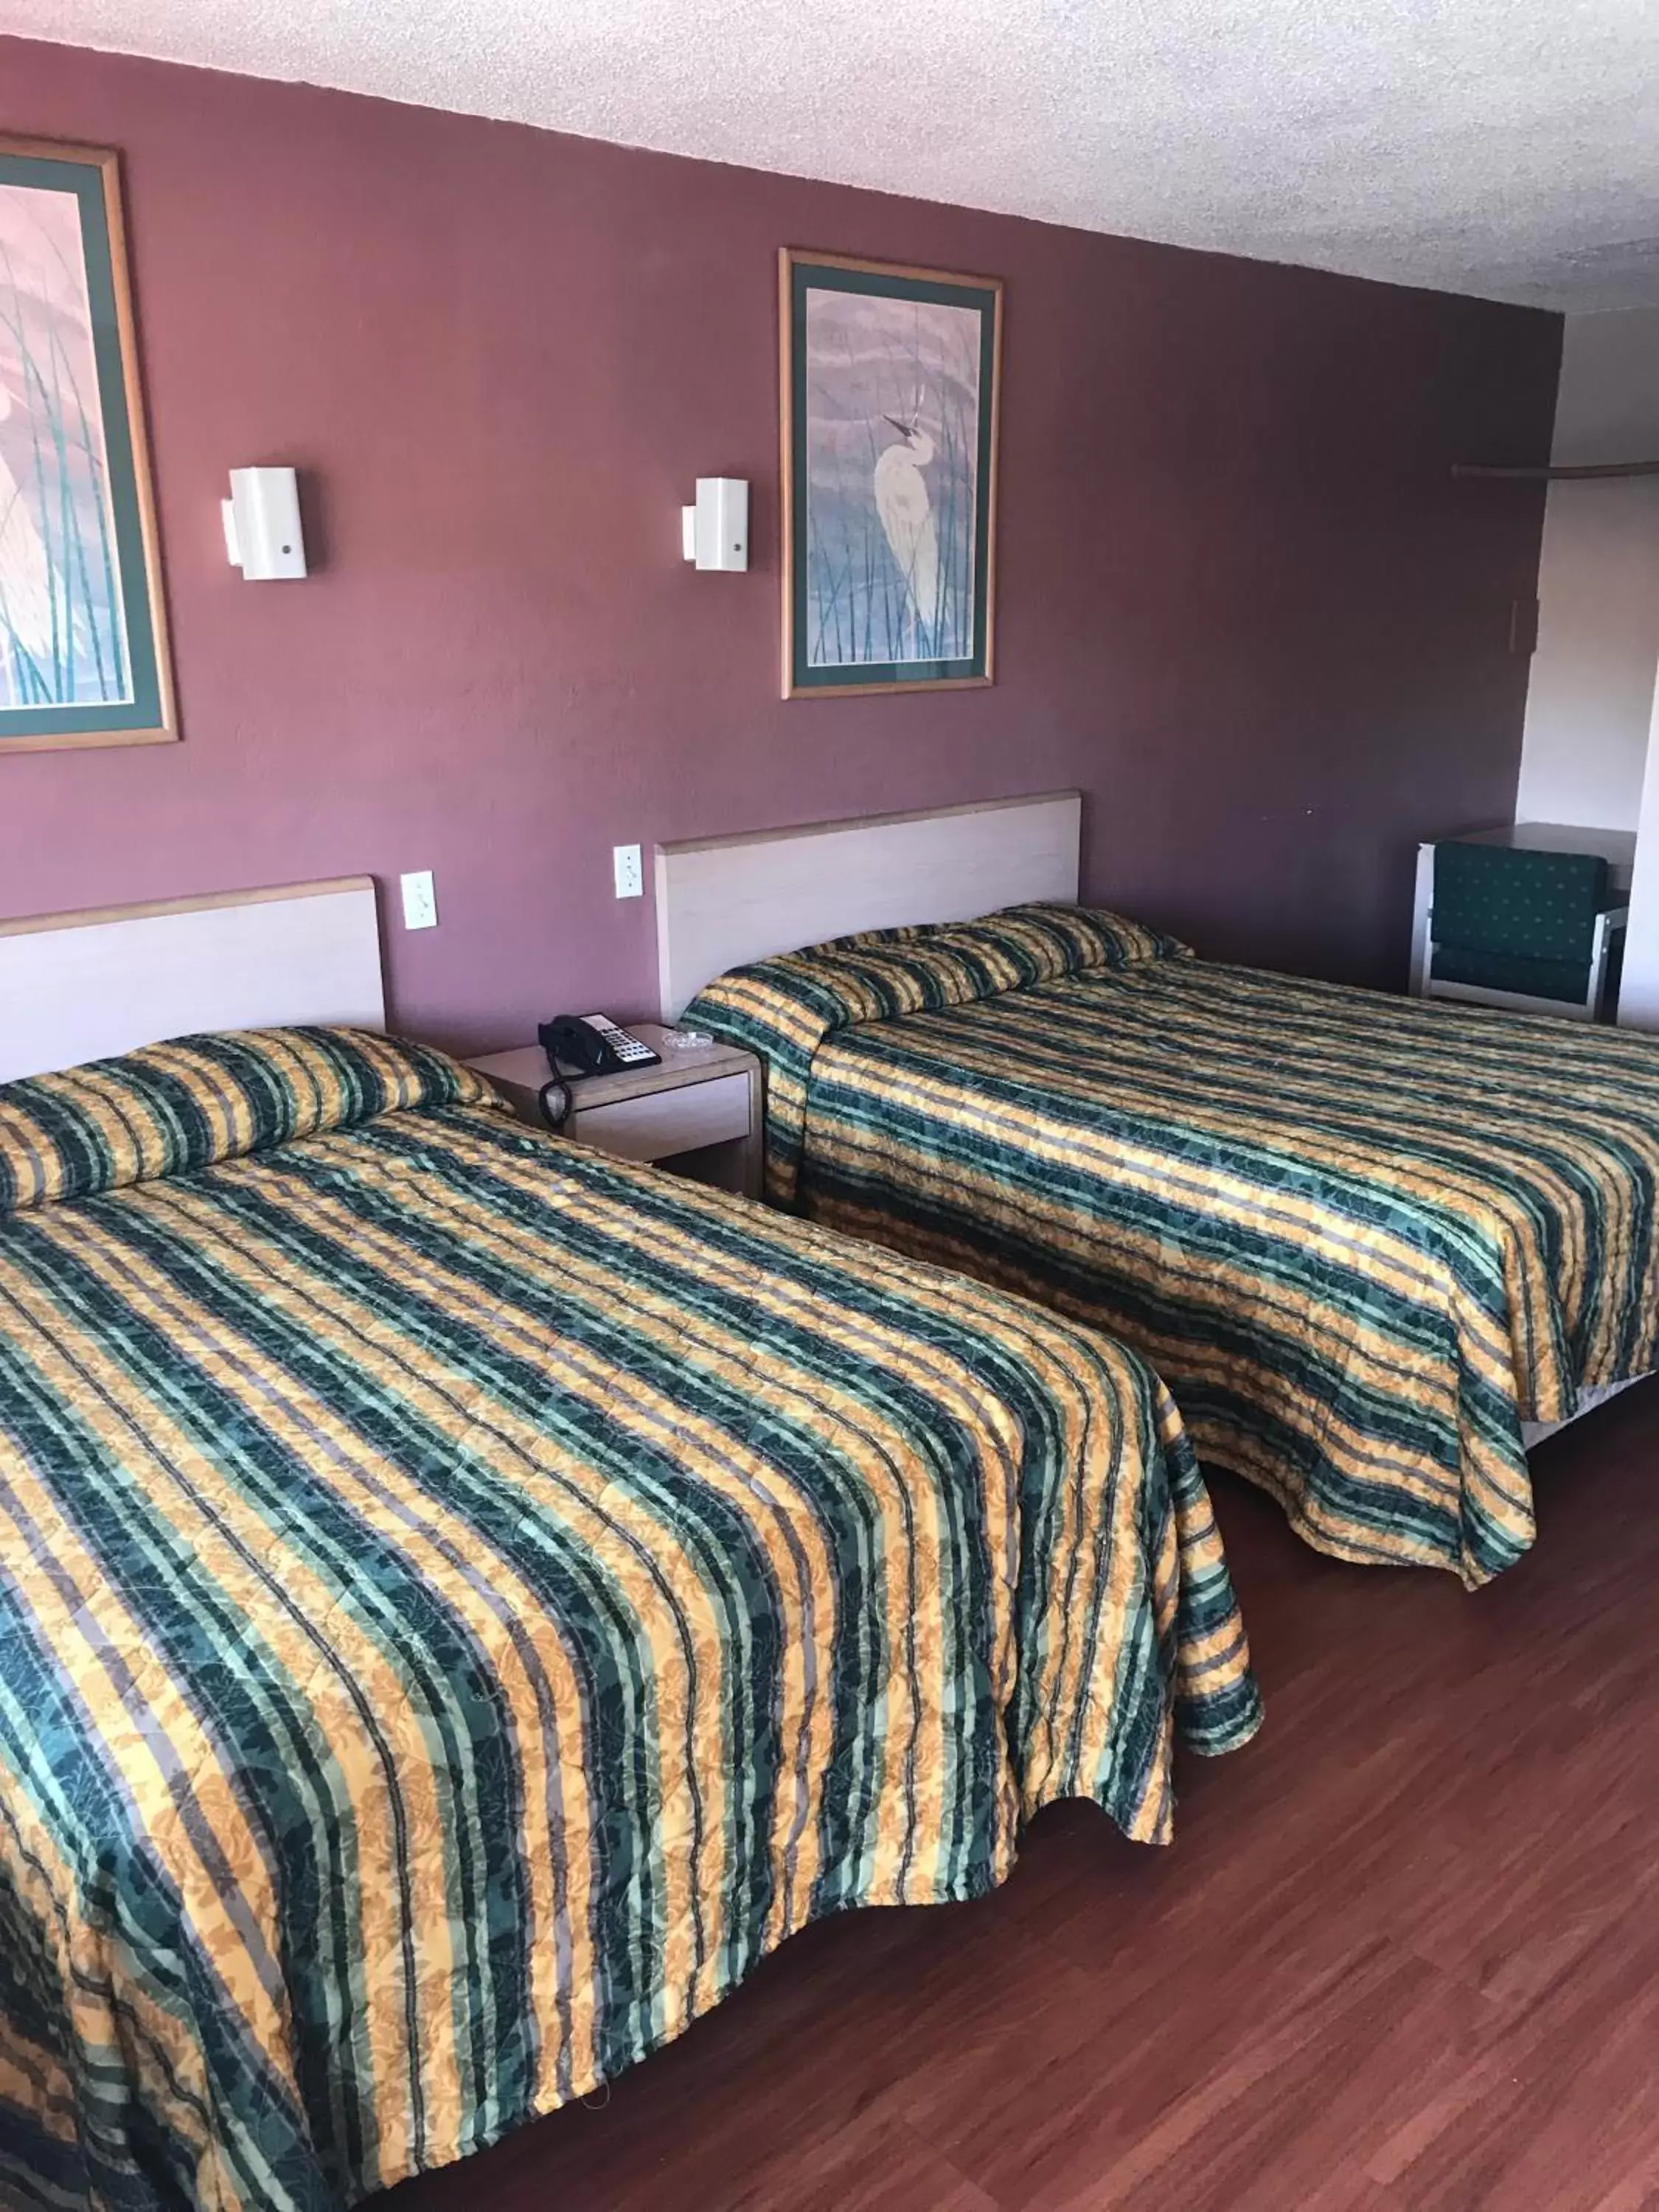 Bed in Economy Inn